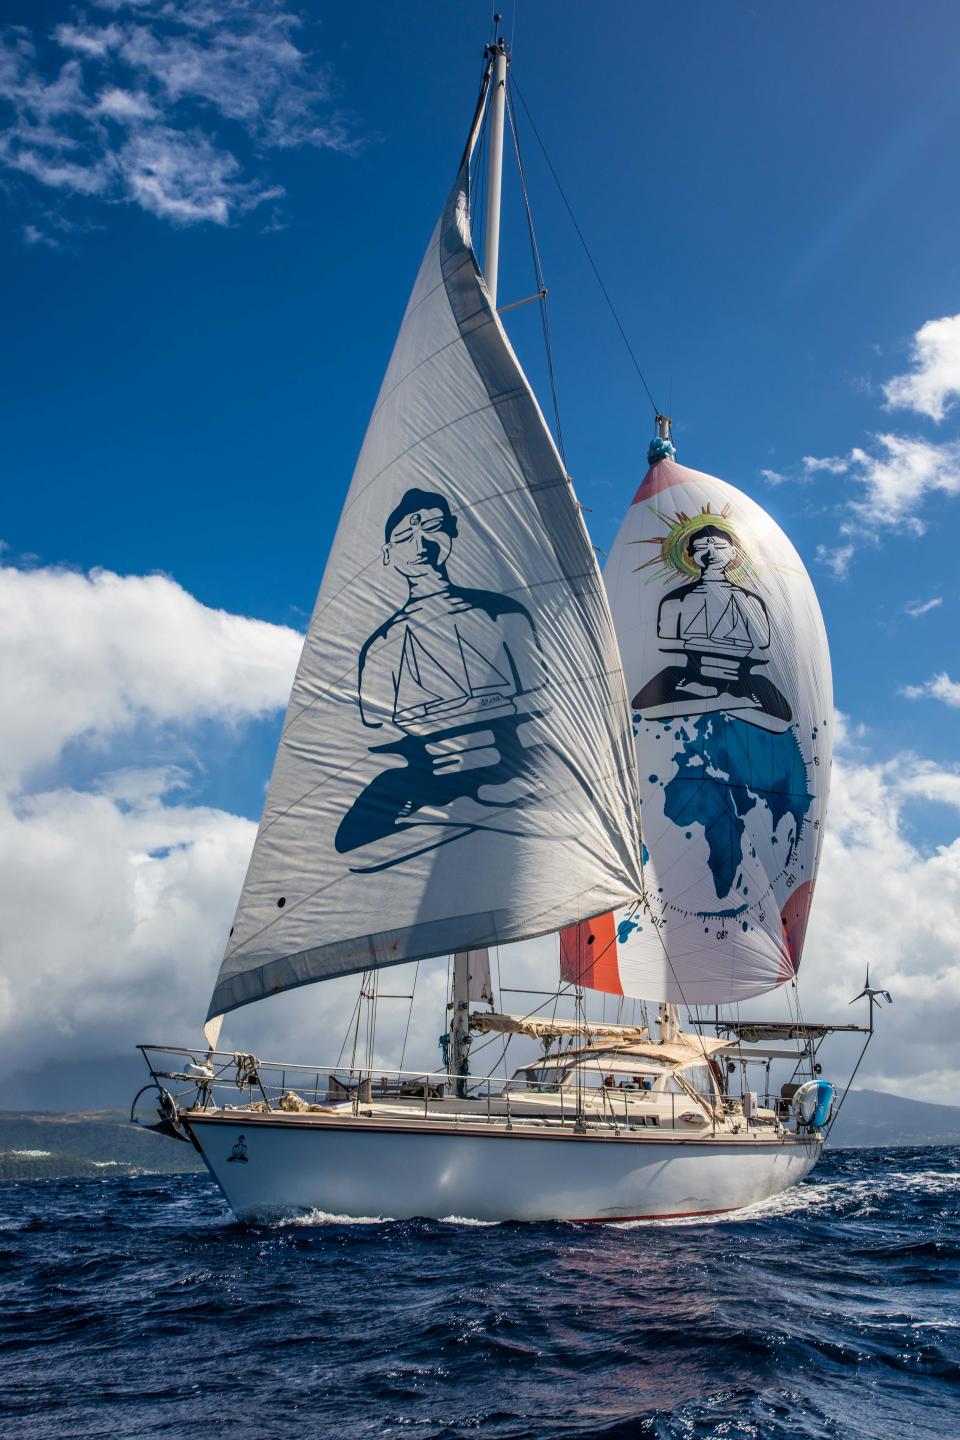 The distinctive Buddha sails of the SV Delos. (Photo courtesy SV Delos)